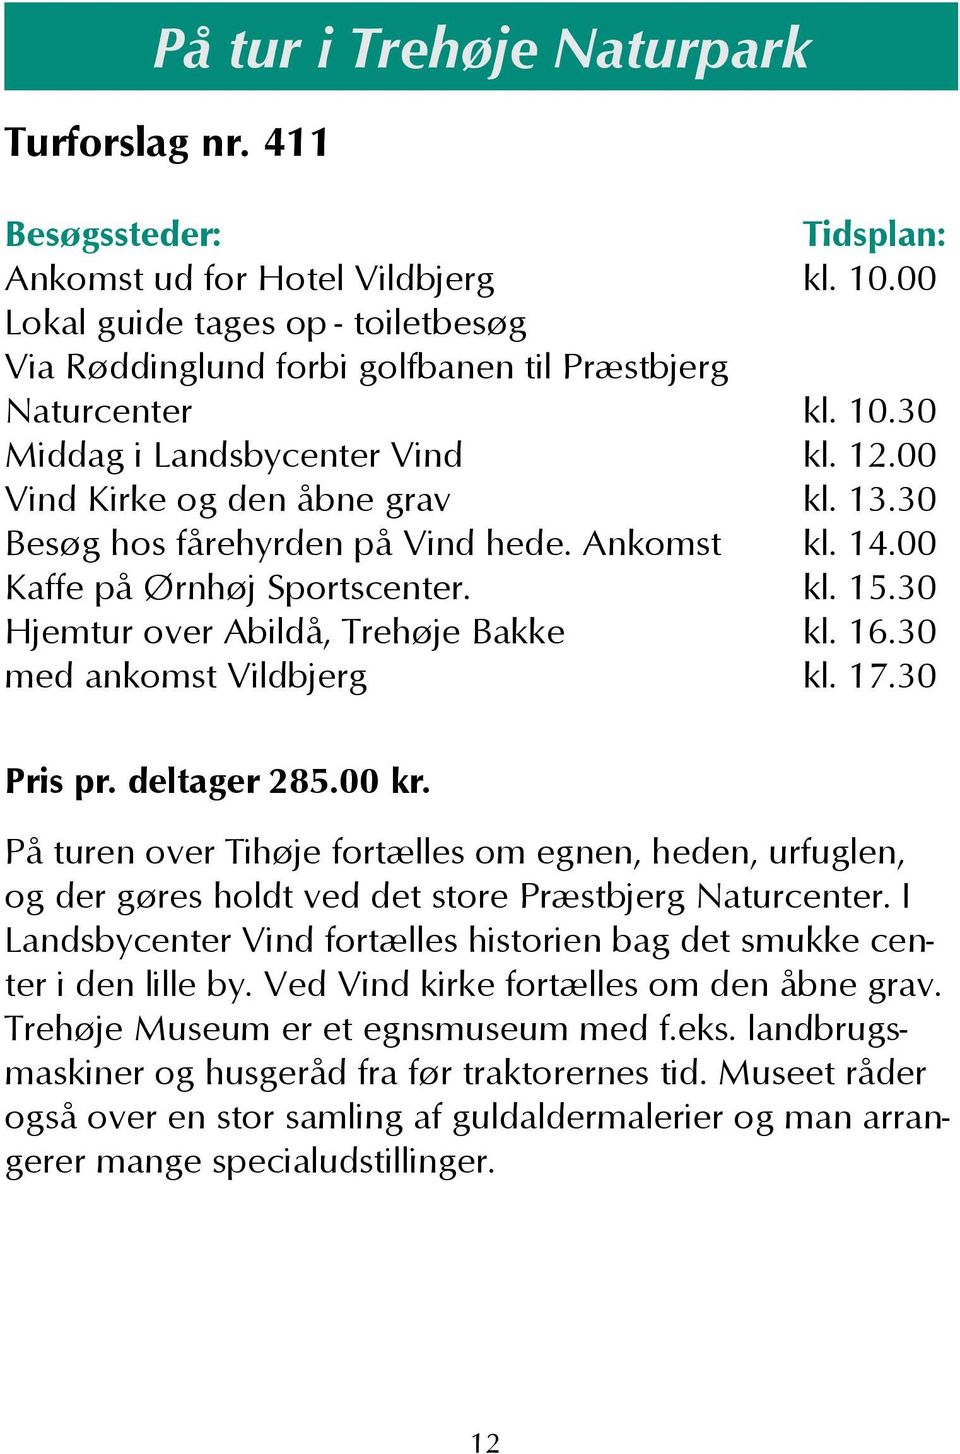 30 med ankomst Vildbjerg kl. 17.30 Pris pr. deltager 285.00 kr. På turen over Tihøje fortælles om egnen, heden, urfuglen, og der gøres holdt ved det store Præstbjerg Naturcenter.